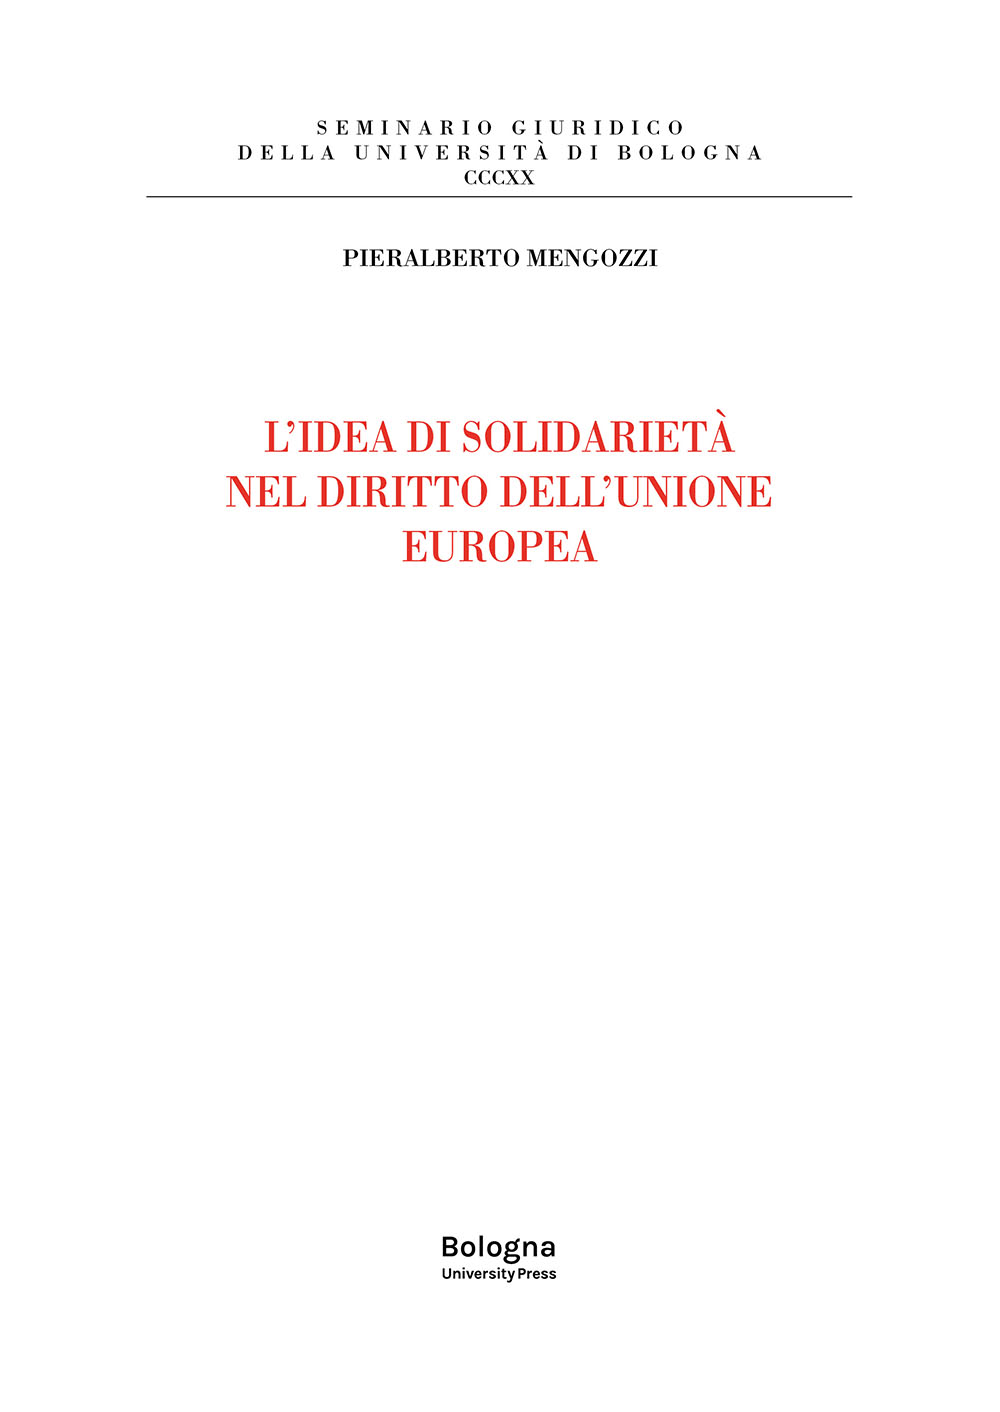 L'idea di solidarietà nel diritto dell'Unione europea - Bologna University Press